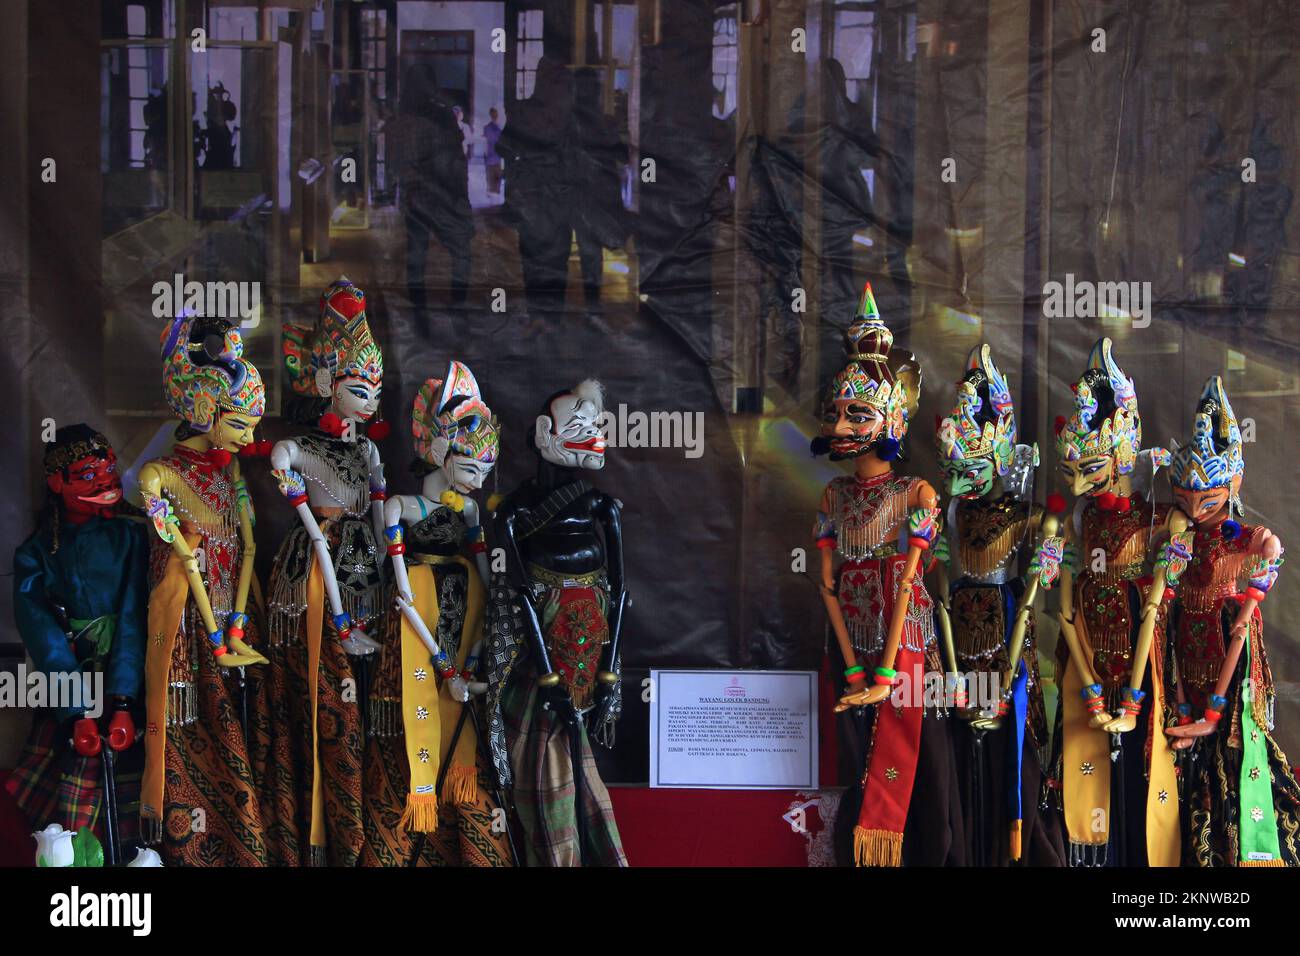 Wayang golek ist eines von Indonesiens kulturellem Erbe und befindet sich in der Sundanese Gegend von West Java. Kostüm Stockfoto